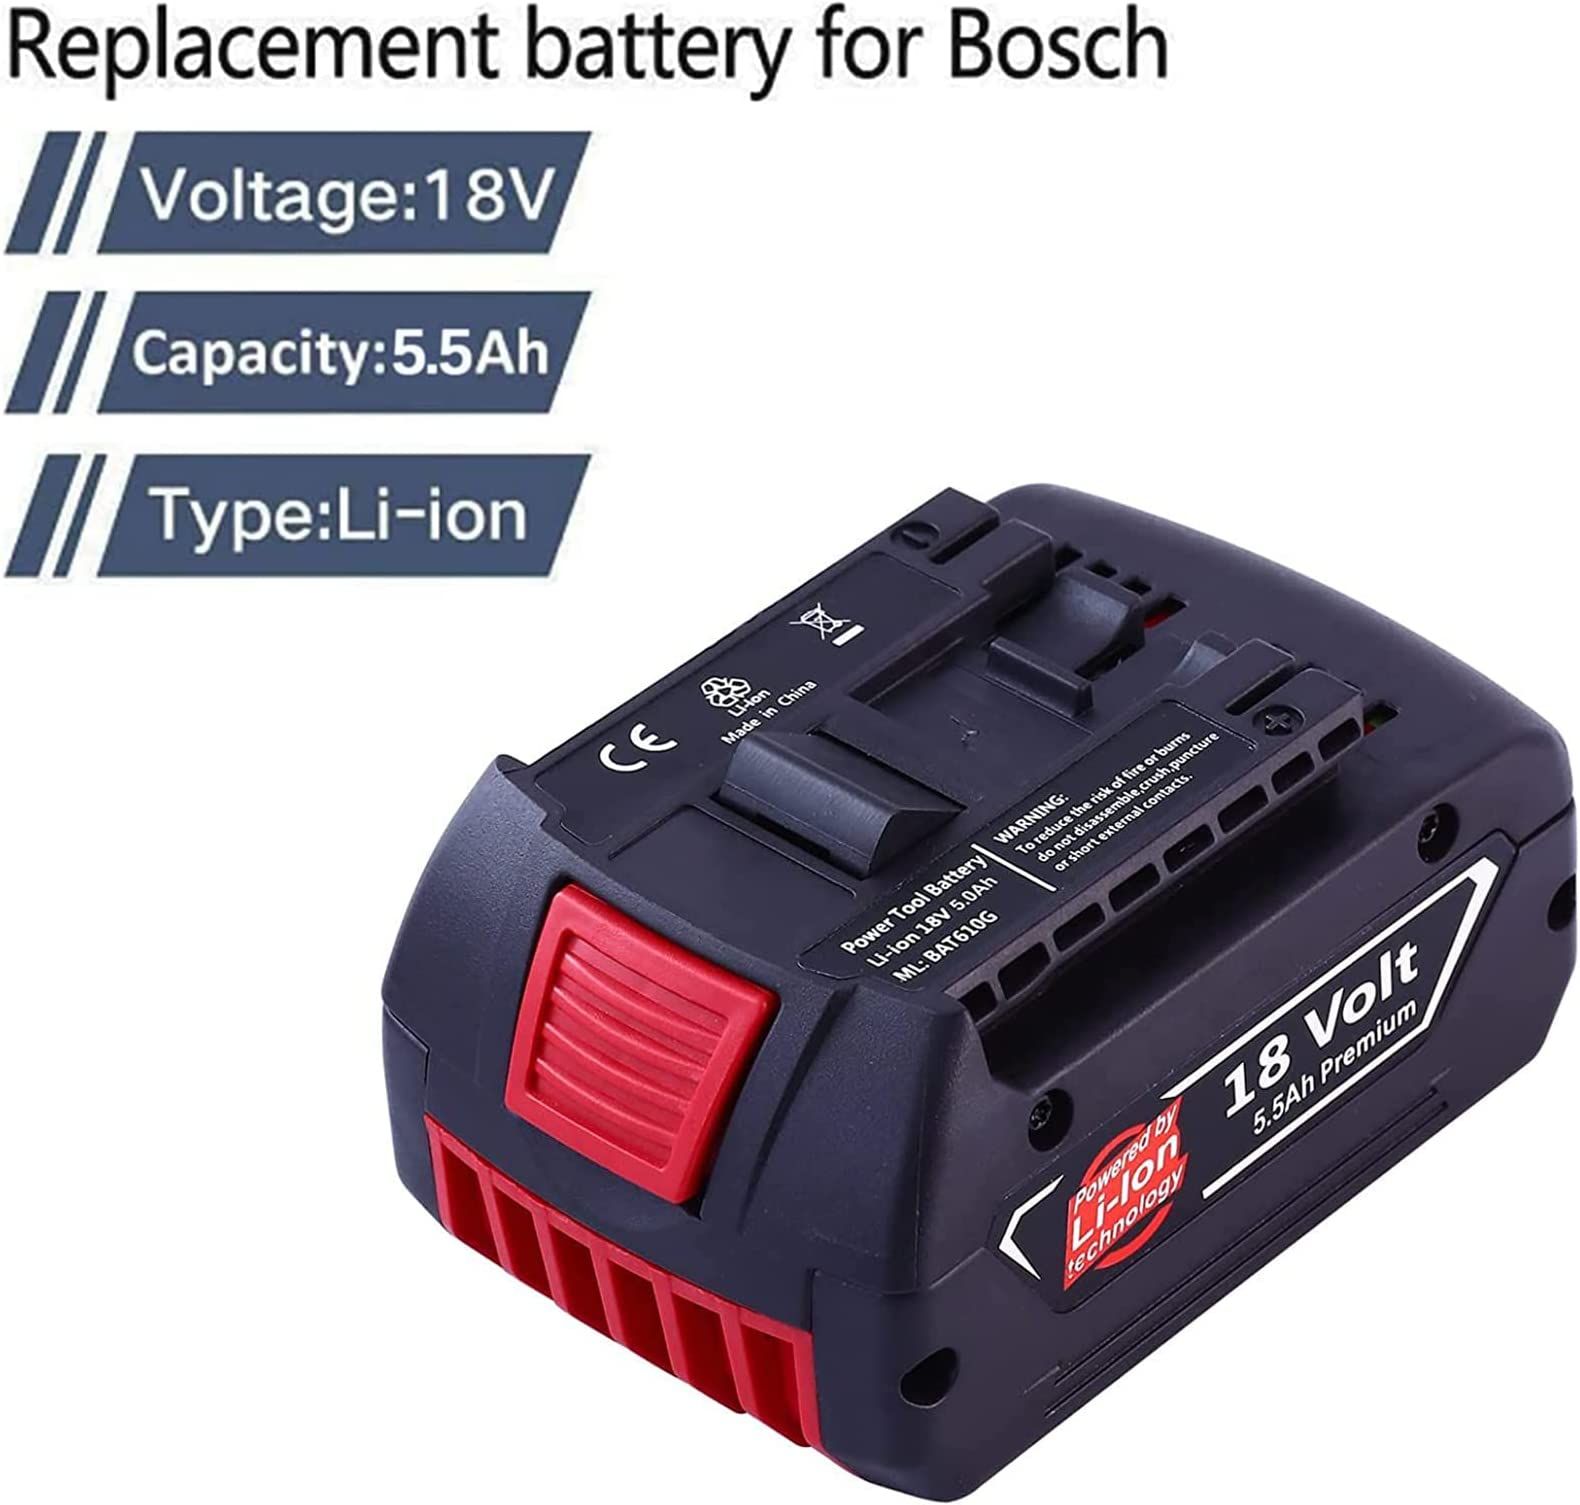 GBA 18V 5.0Ah Batterie